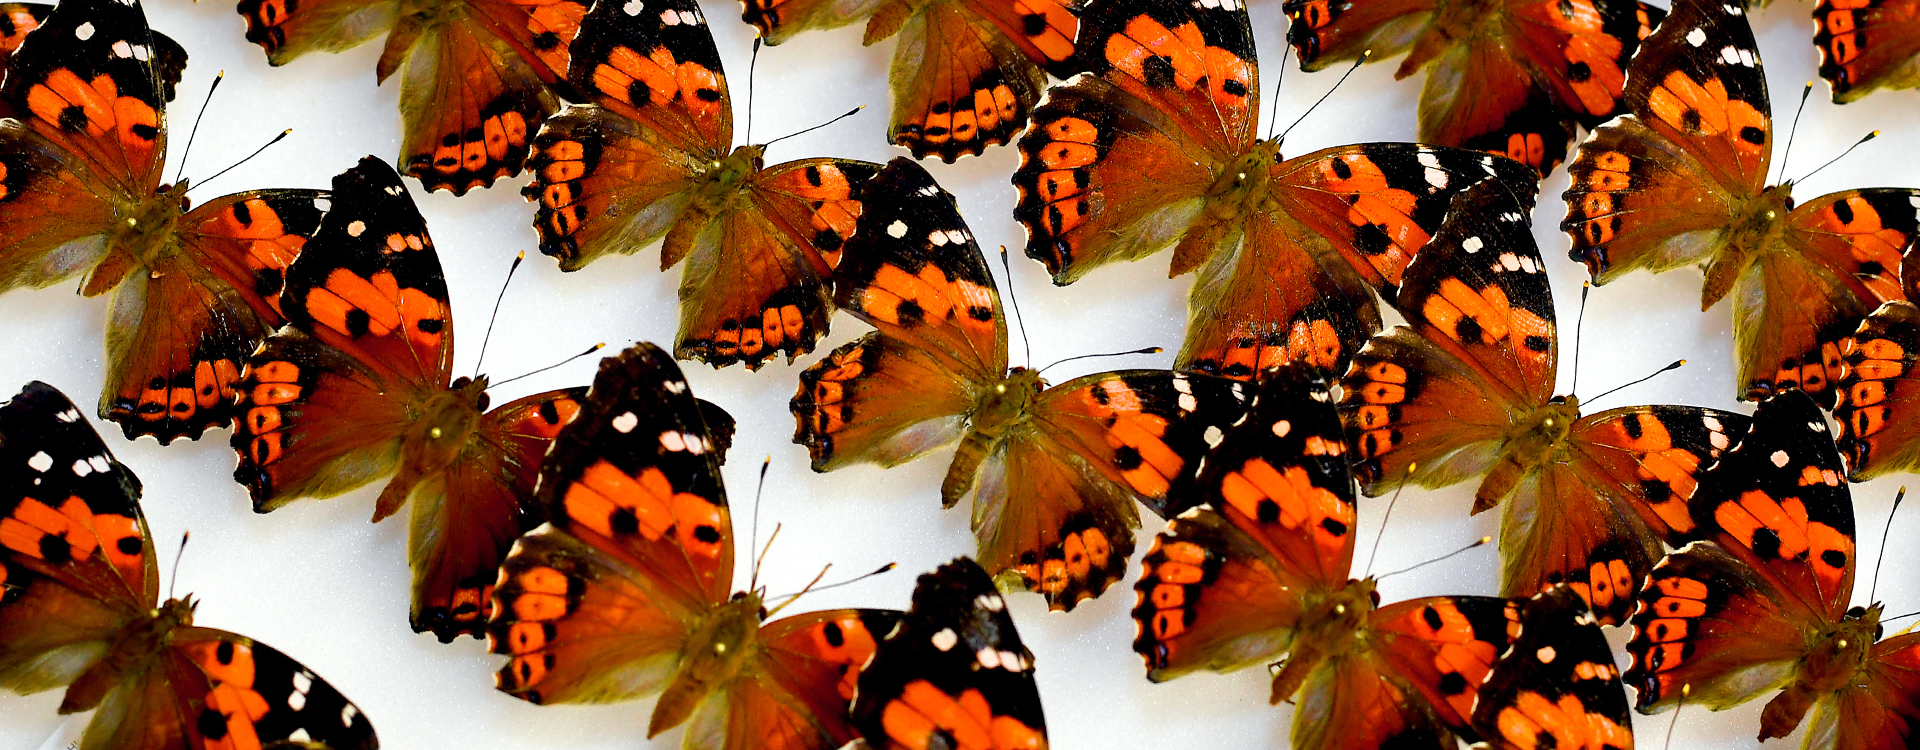 Kamehameha butterflies angle